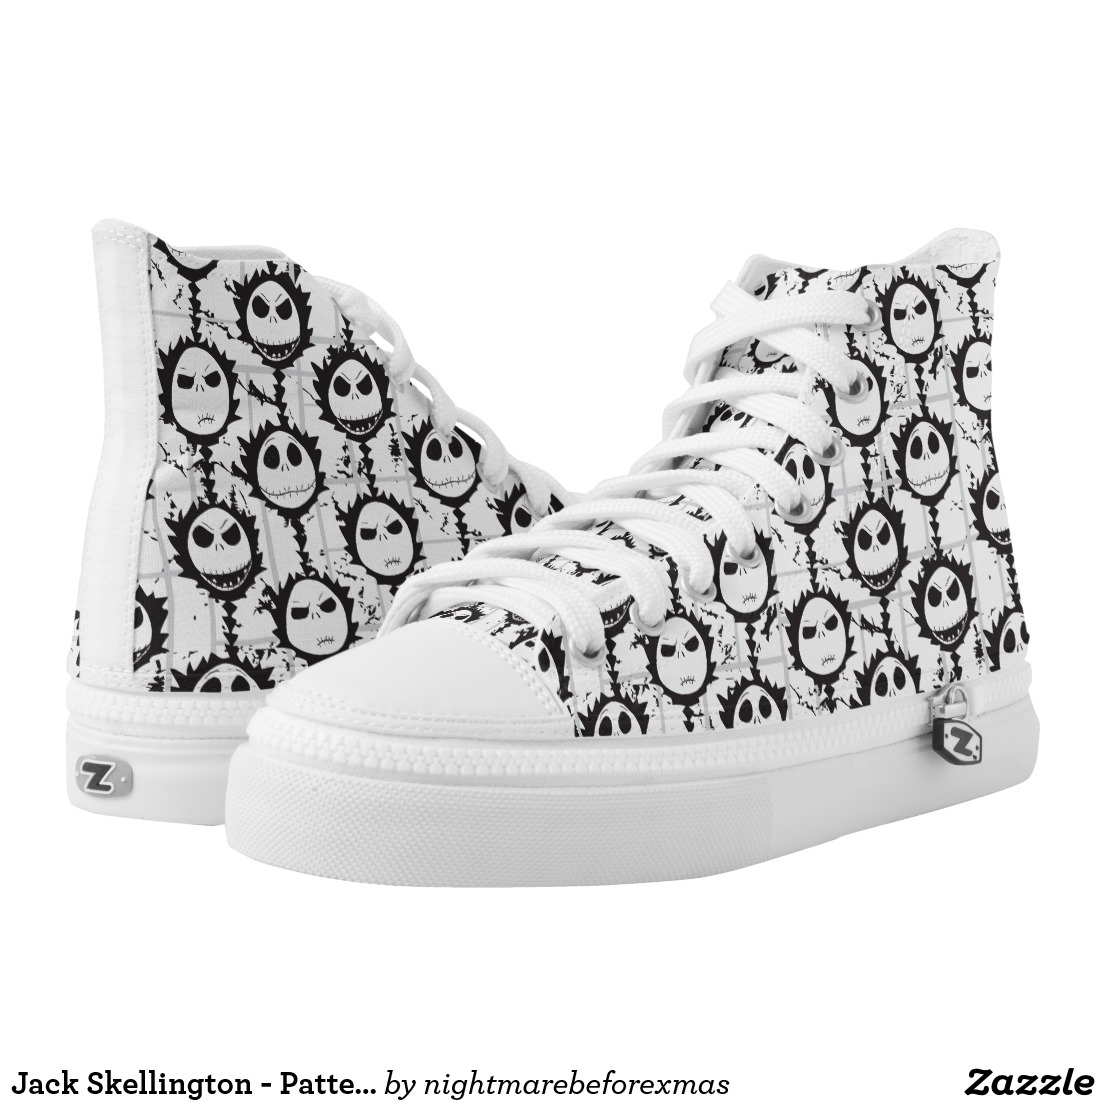 Jack Skellington - Pattern High-Top Sneakers